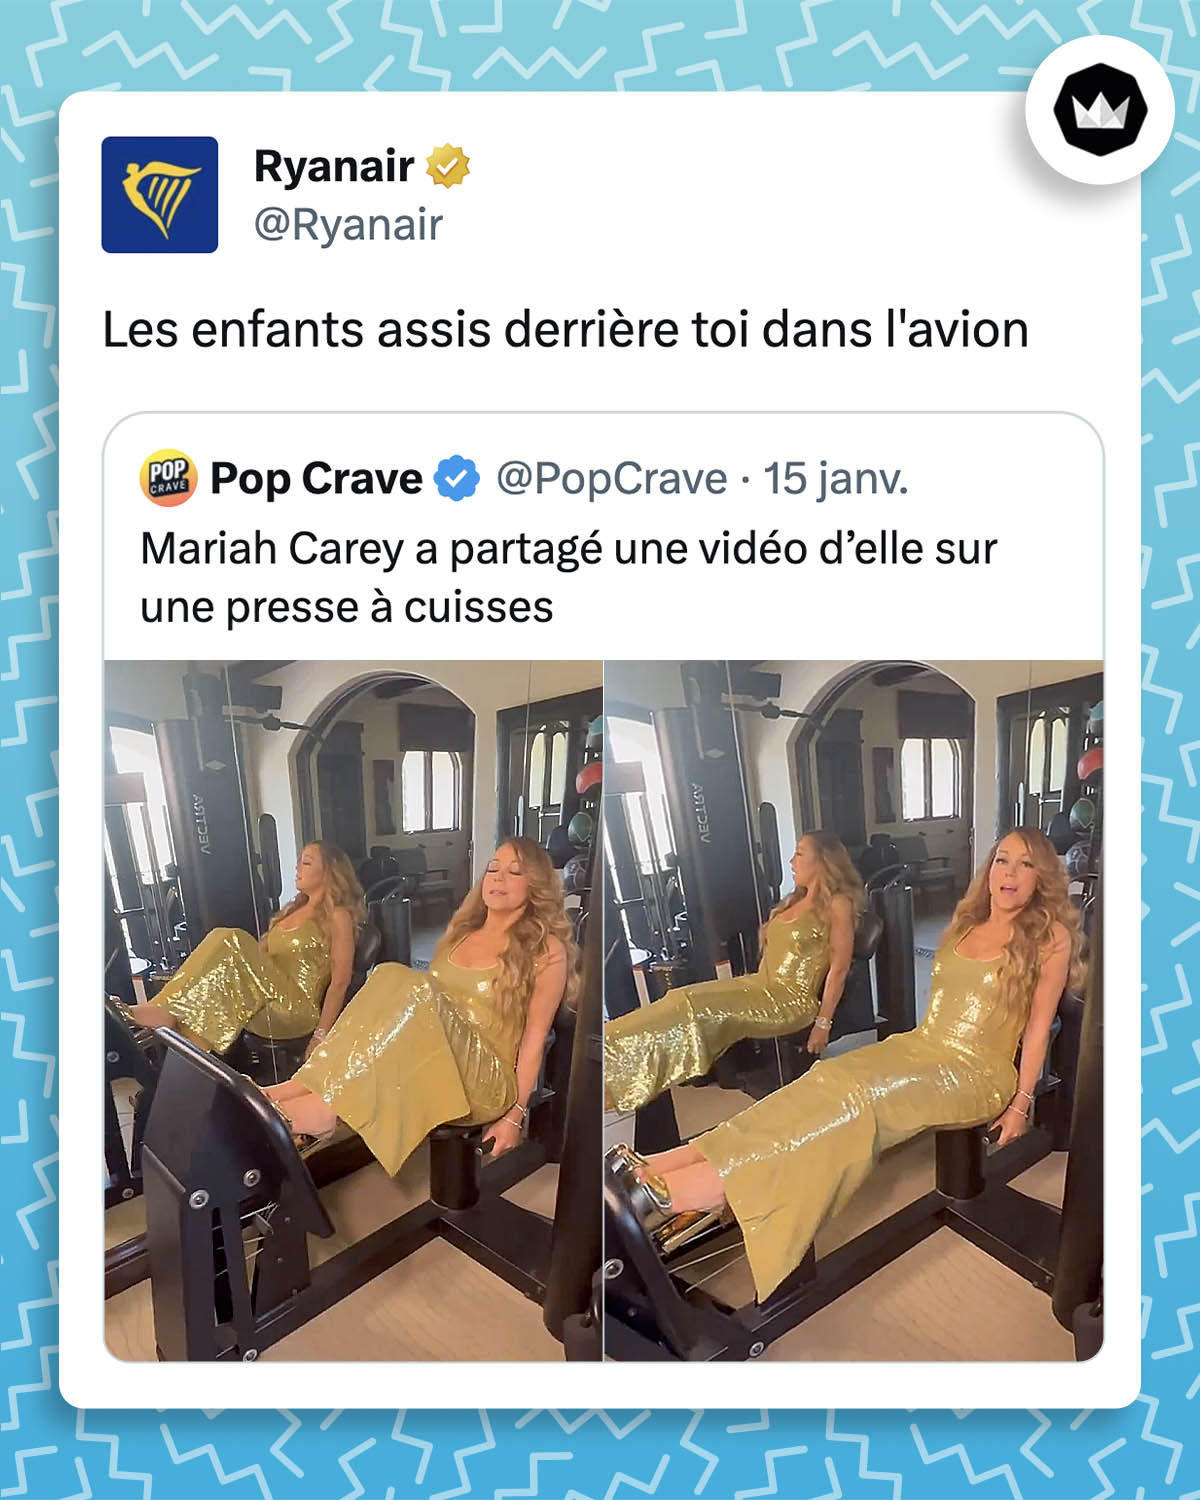 @PopCrave : 
"Mariah Carey a partagé une vidéo d'elle sur une presse à cuisses". Avec une photo de Mariah Carey s'entrainant sur une machine de sport. 
Ryanair : 
"Les enfants assis derrière toi dans l'avion"